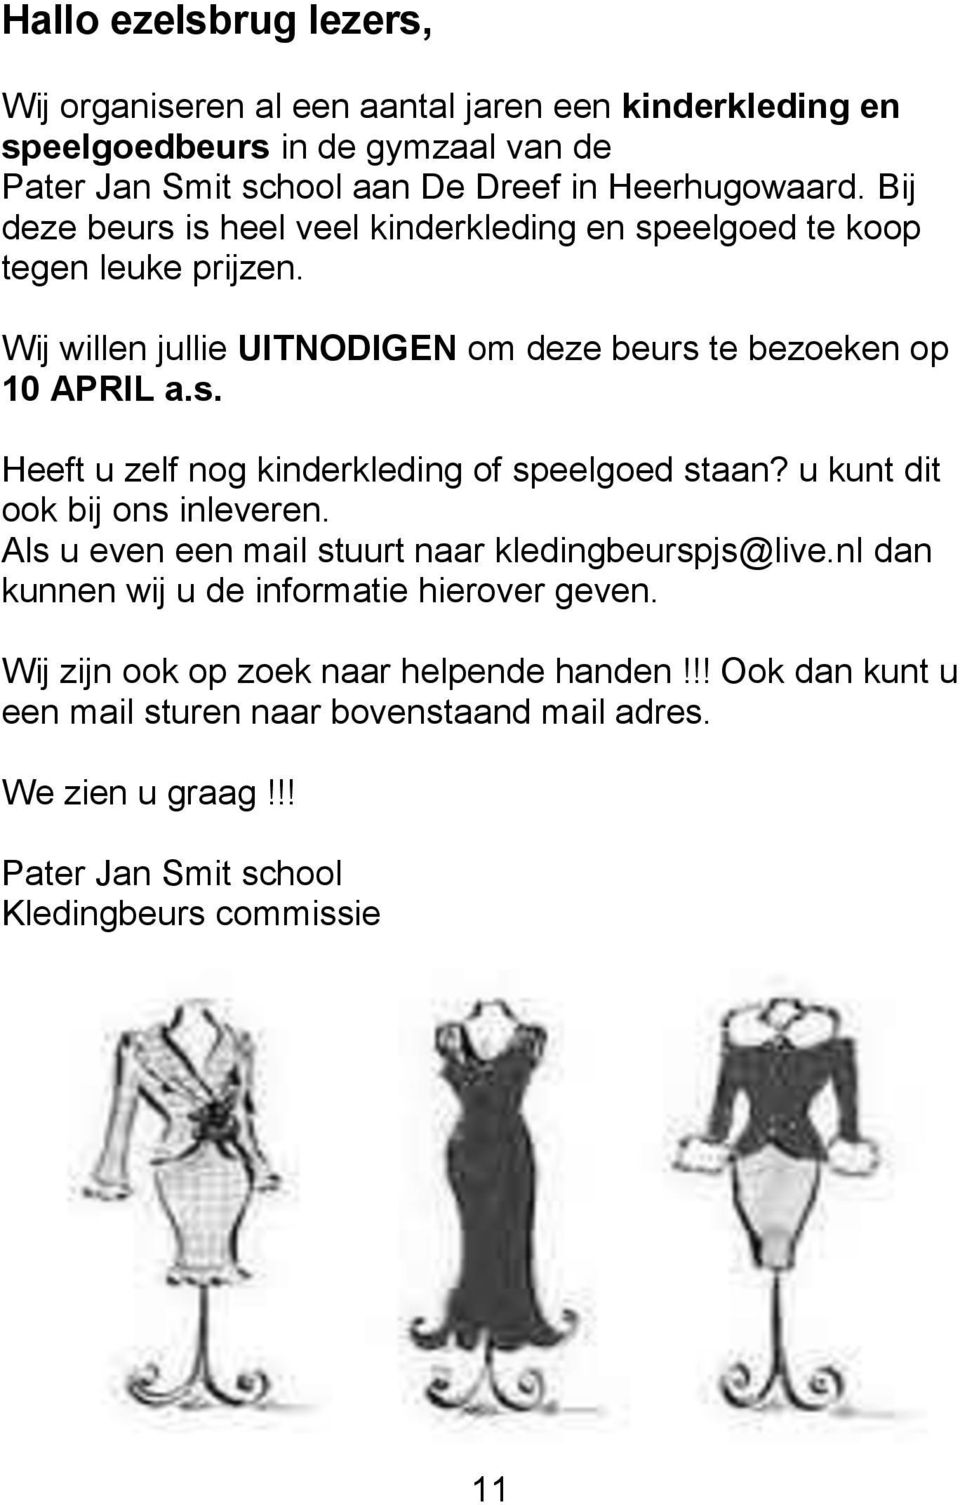 u kunt dit ook bij ons inleveren. Als u even een mail stuurt naar kledingbeurspjs@live.nl dan kunnen wij u de informatie hierover geven.